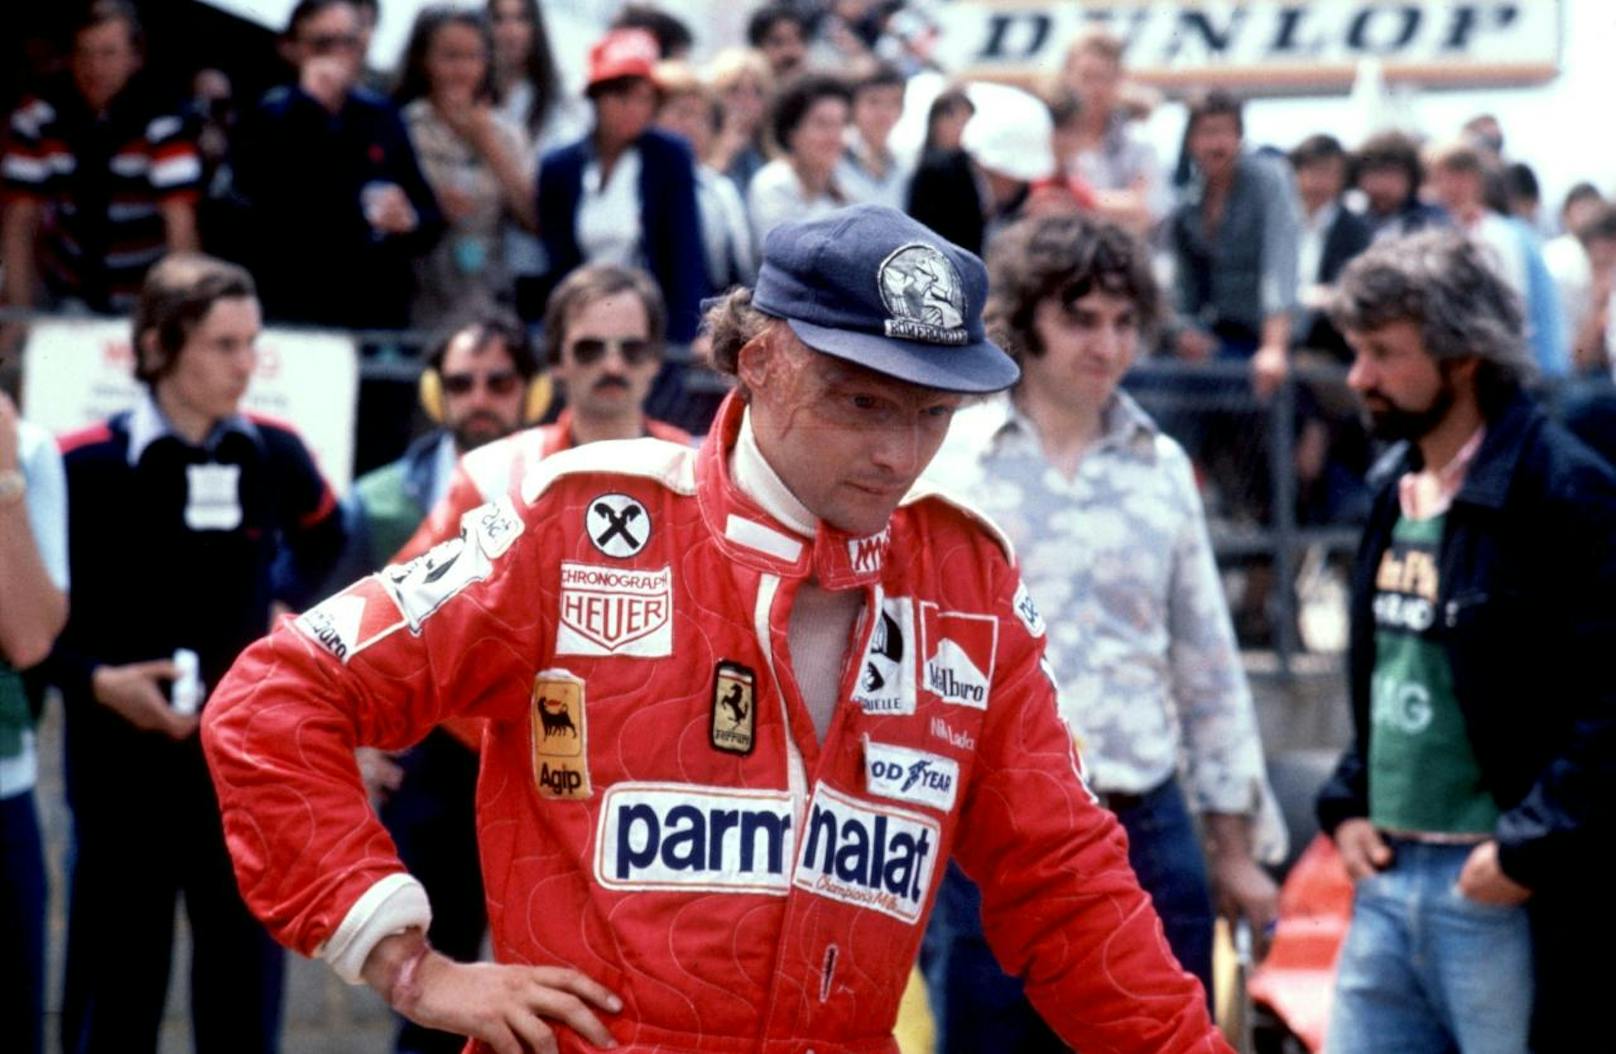 Lauda war für fünf Formel 1-Teams als Fahrer tätig: 1971-1972 March, 1973 B.R.M., 1974-1977 Ferrari, 1978-1979 Brabham und 1982-1984 McLaren.